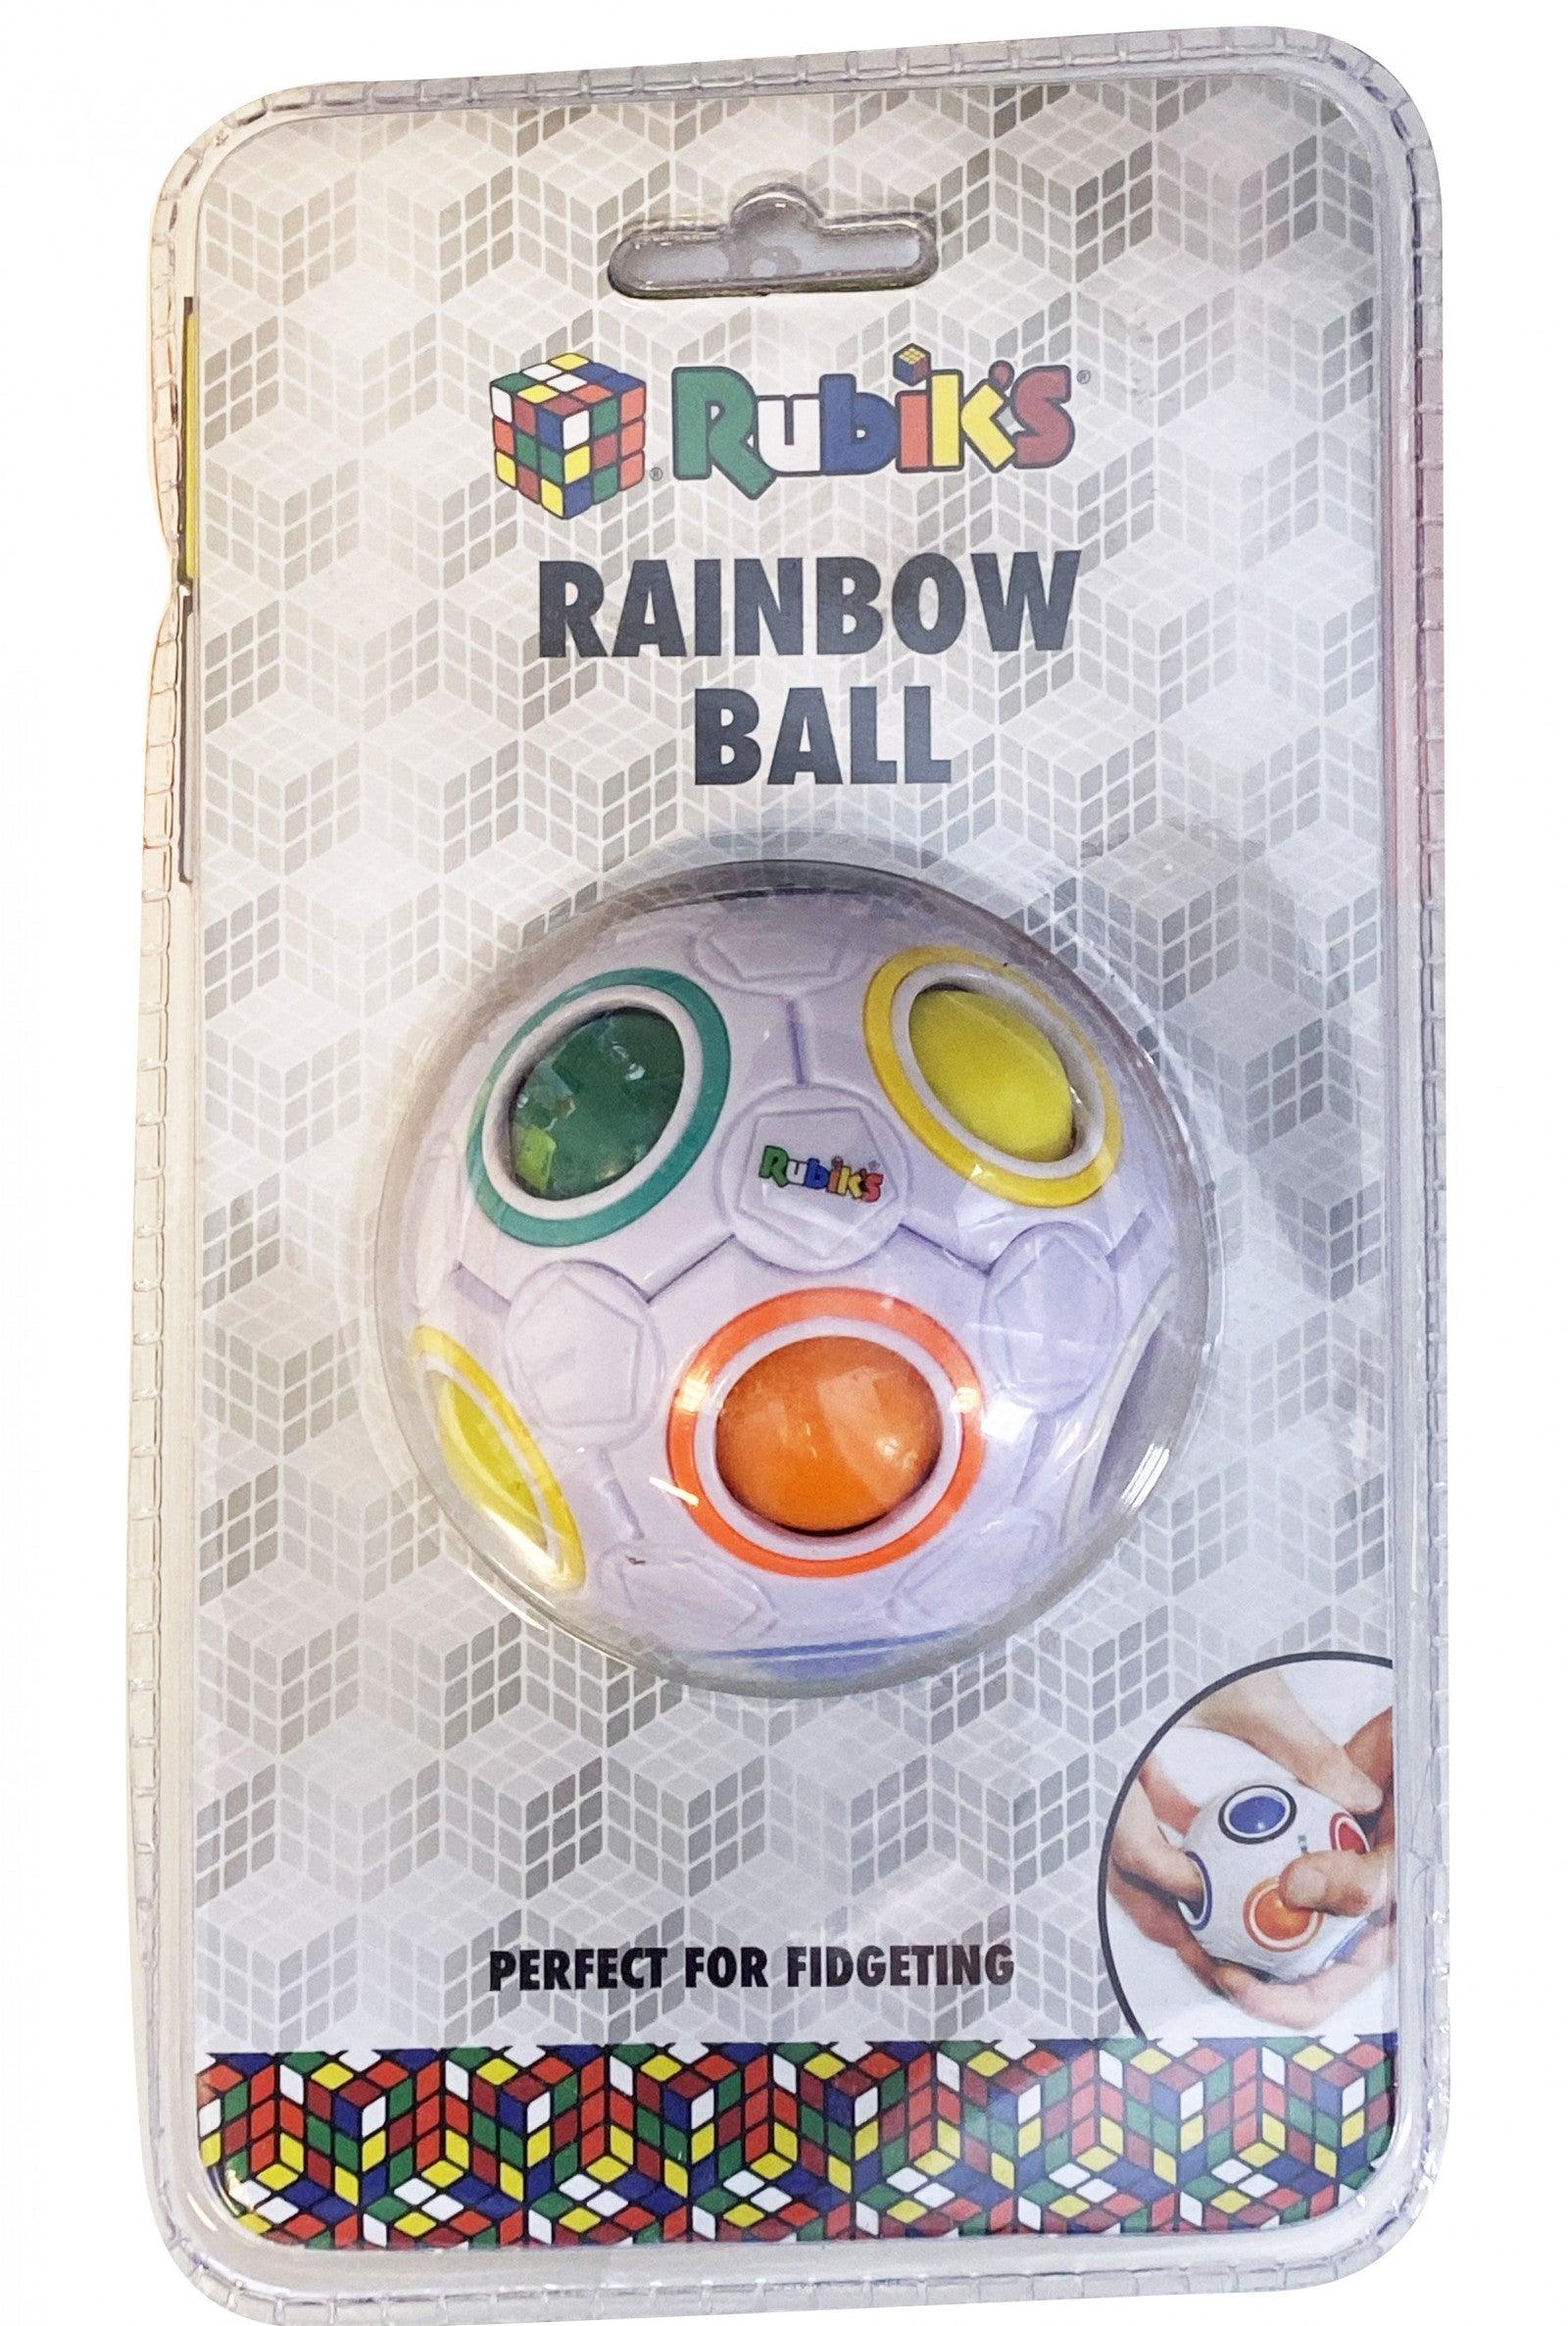 VR-91389 Rubiks Rainbow Ball (White) - Rubiks - Titan Pop Culture